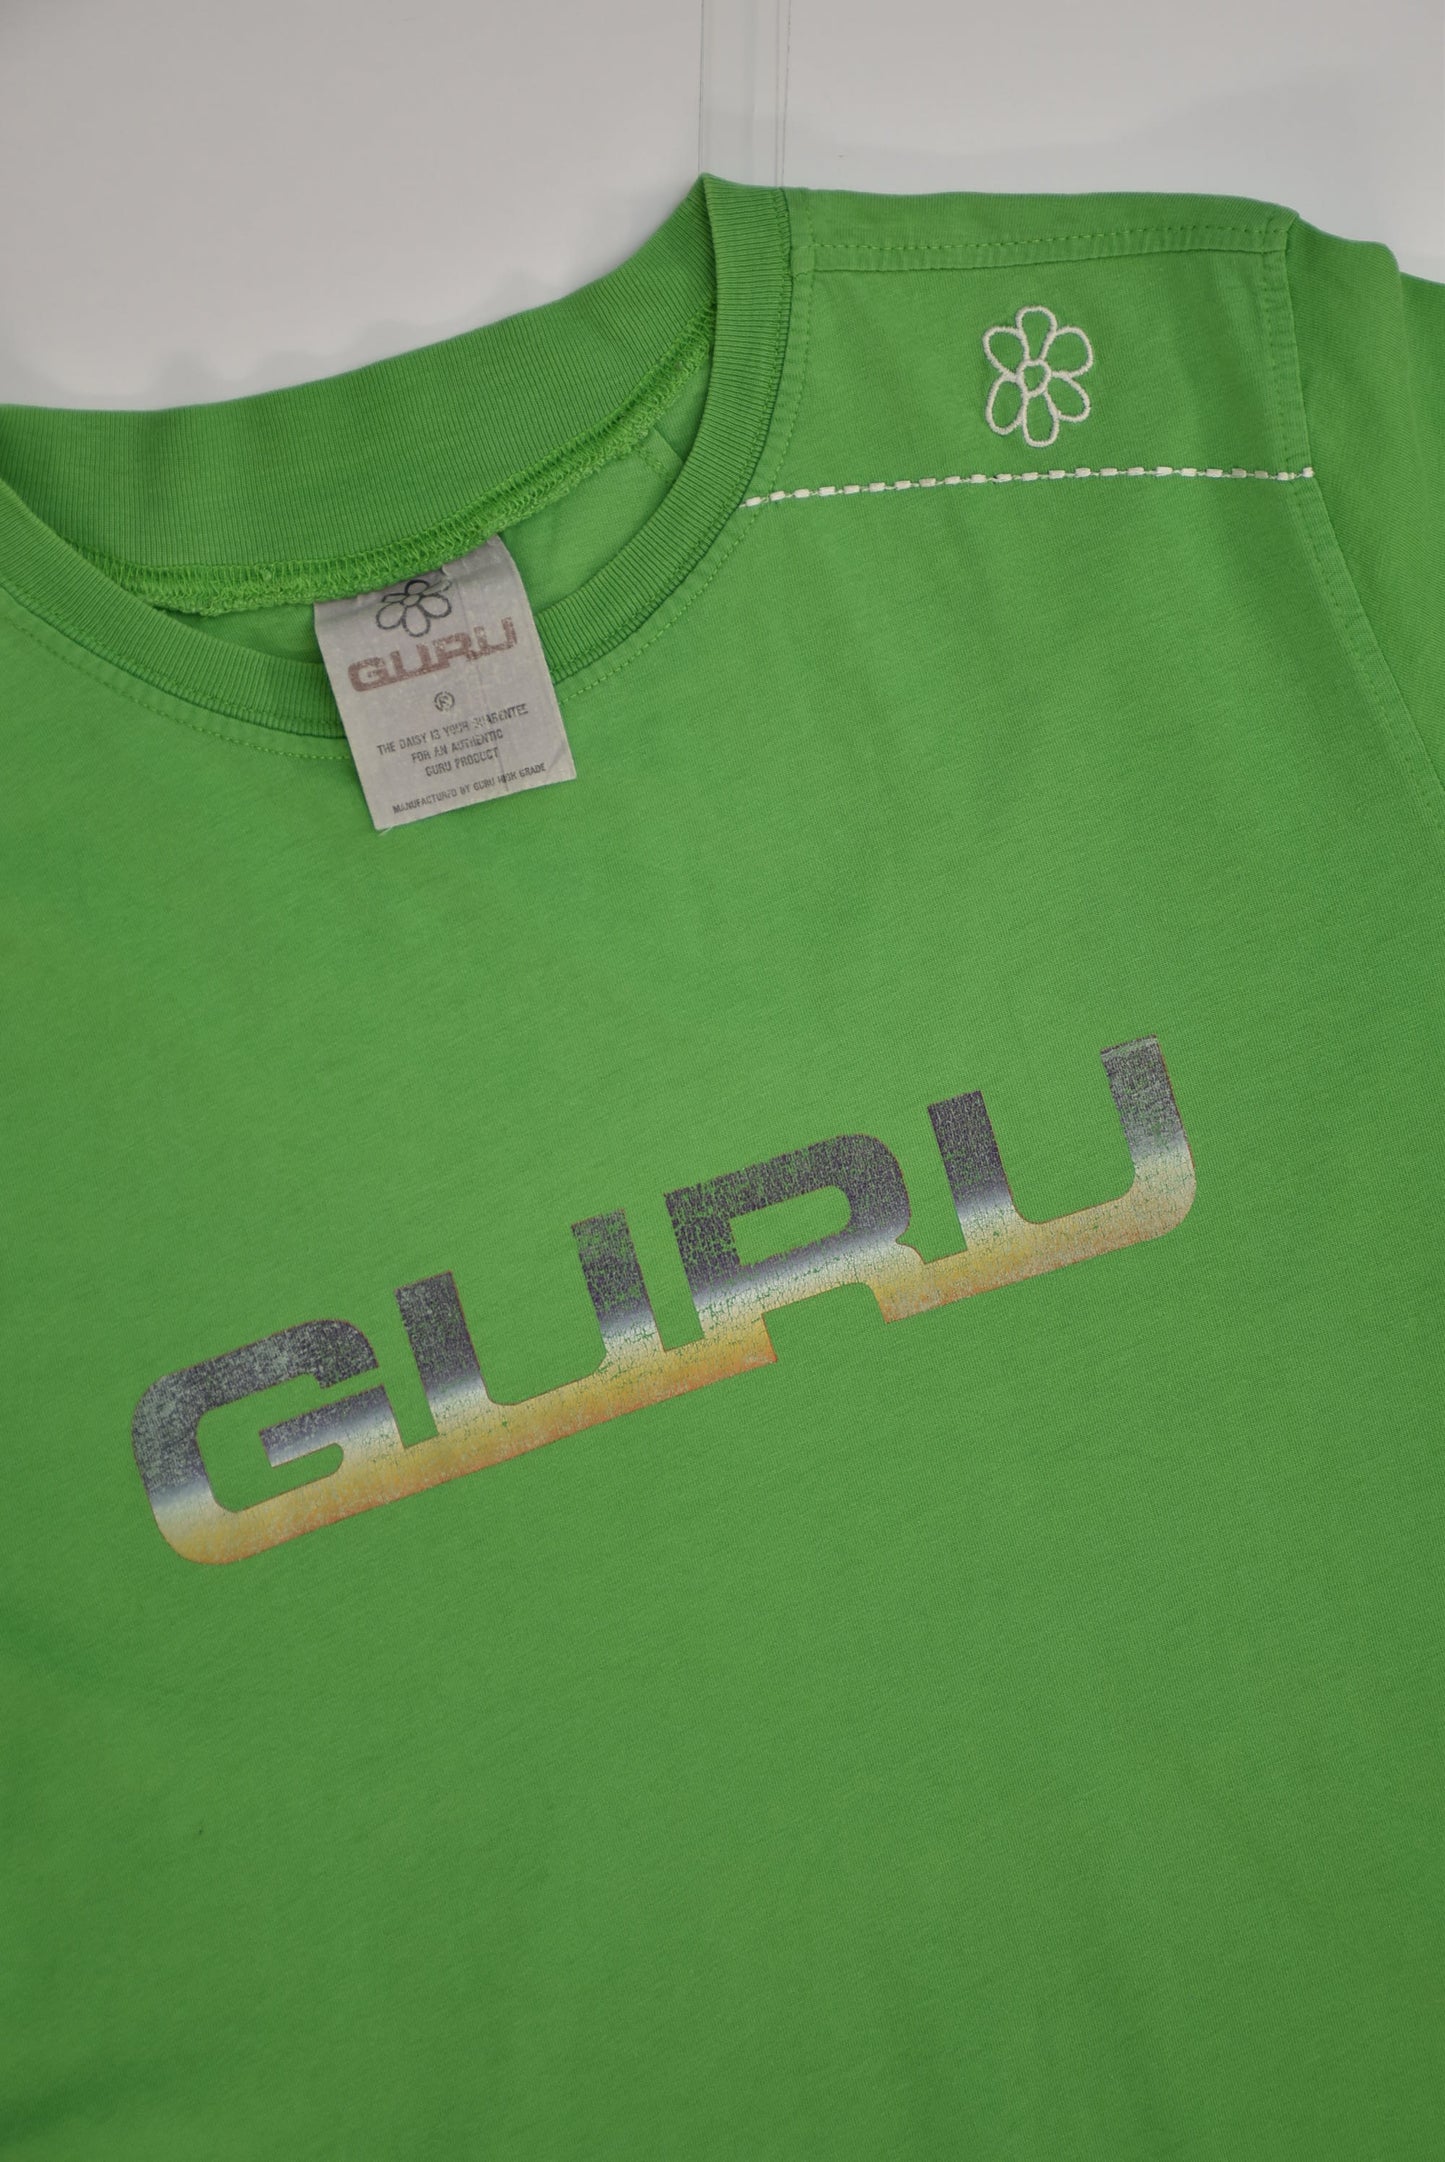 Guru T-shirt (XL)